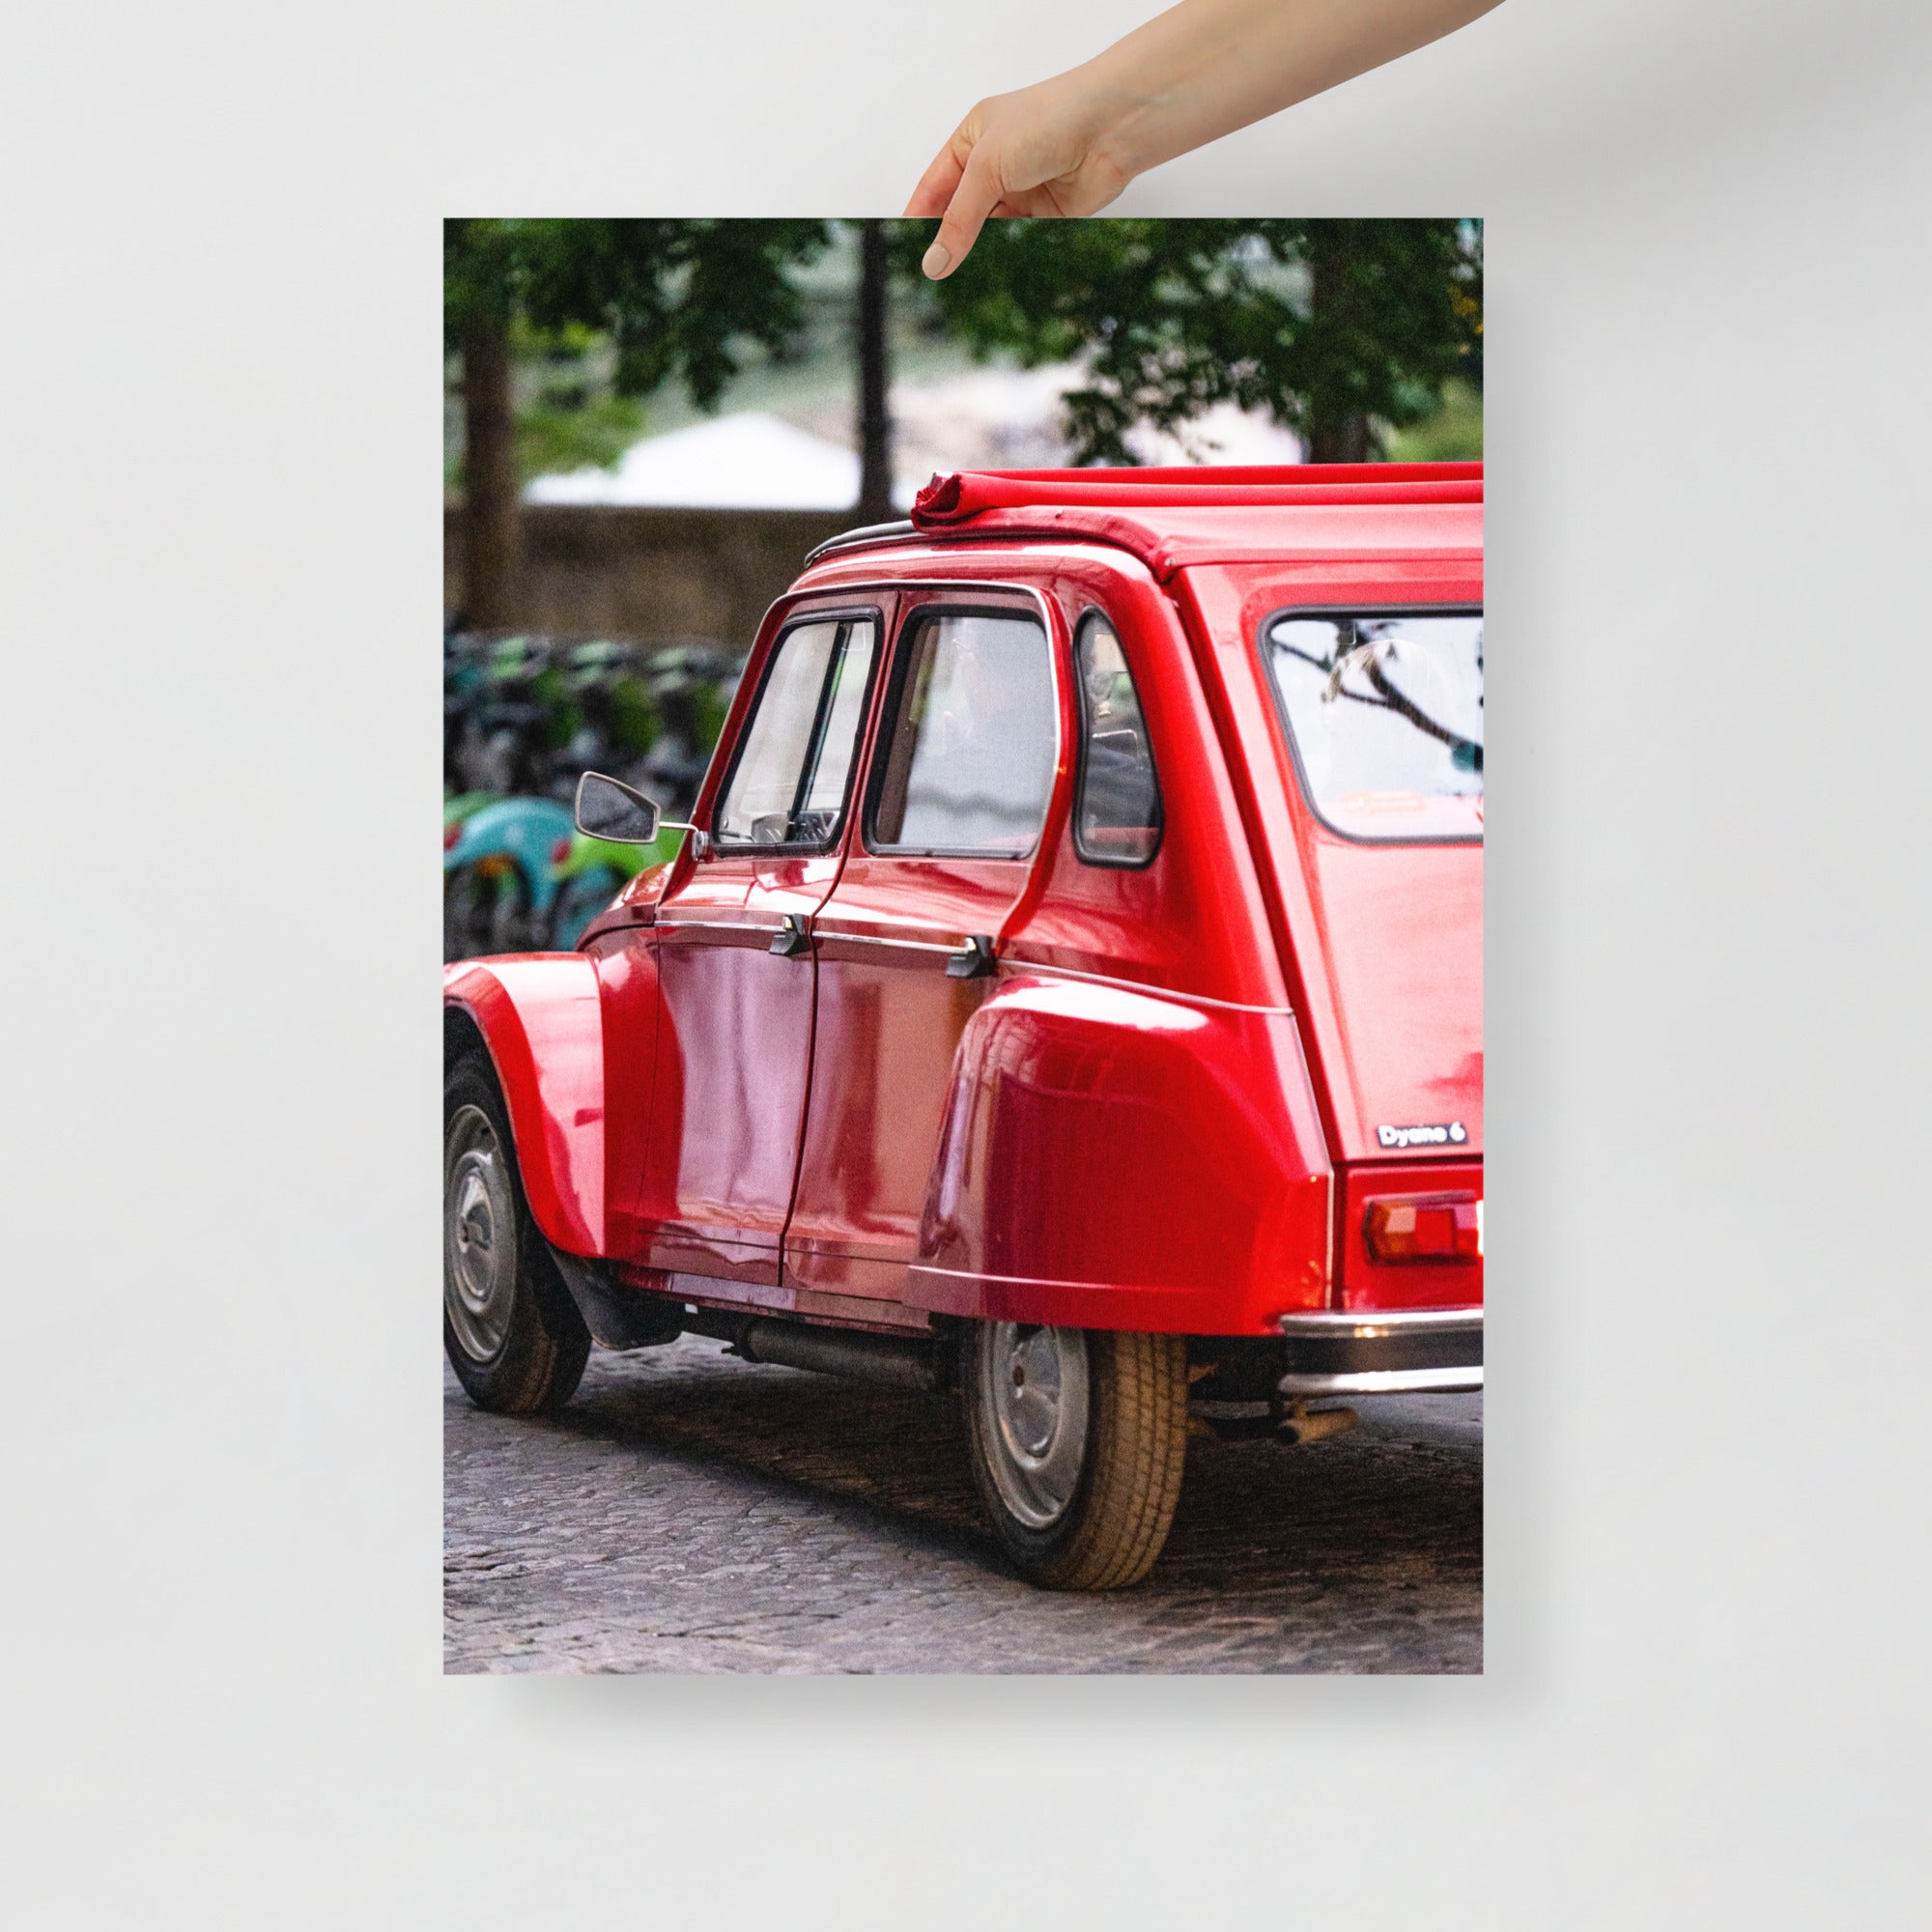 Poster mural - Citroën Dyane – Photographie de vielle voiture – Poster photo, poster XXL, Photo d’art, photographie murale et des posters muraux des photographies de rue unique au monde. La boutique de posters créée par un Photographe français.